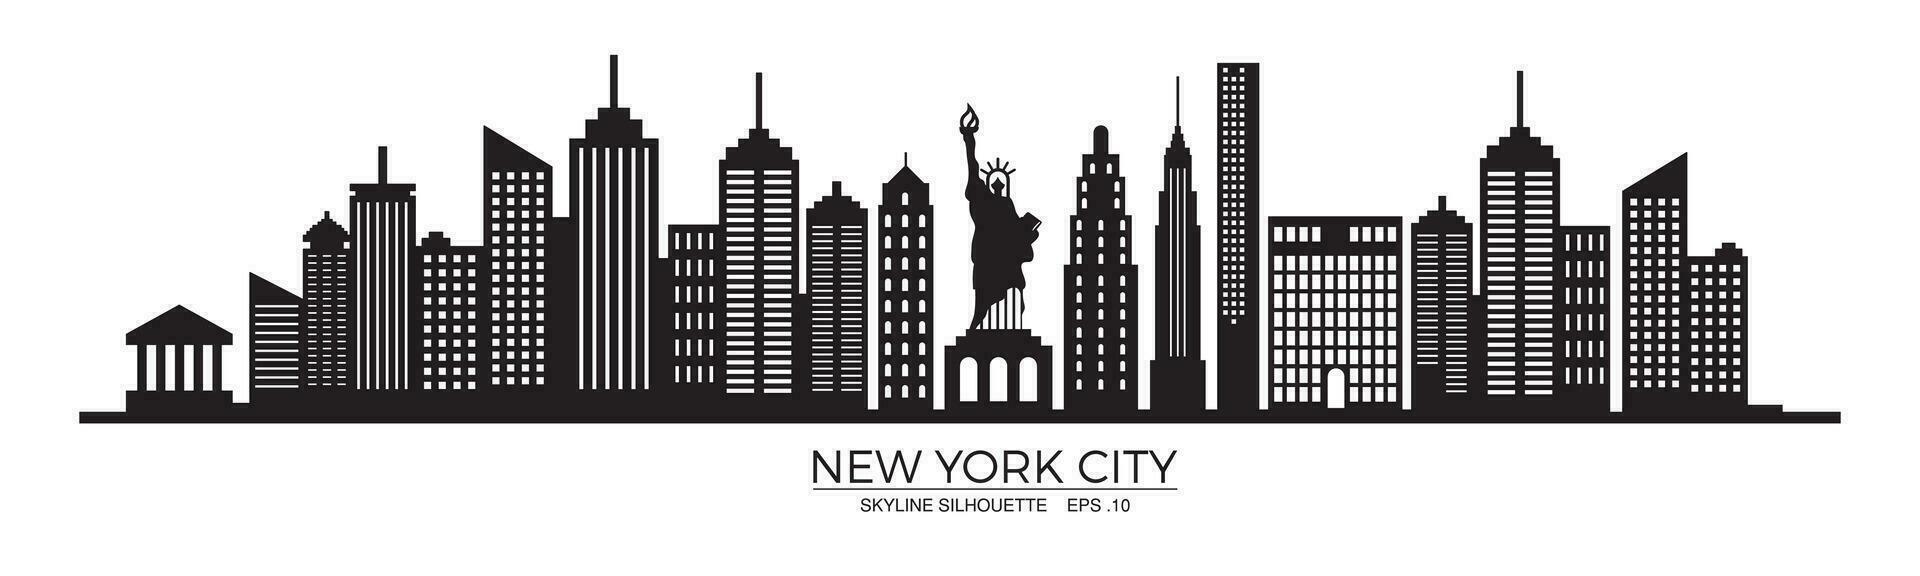 Neu York Stadt Horizont Silhouette mit Statue von Freiheit vektor